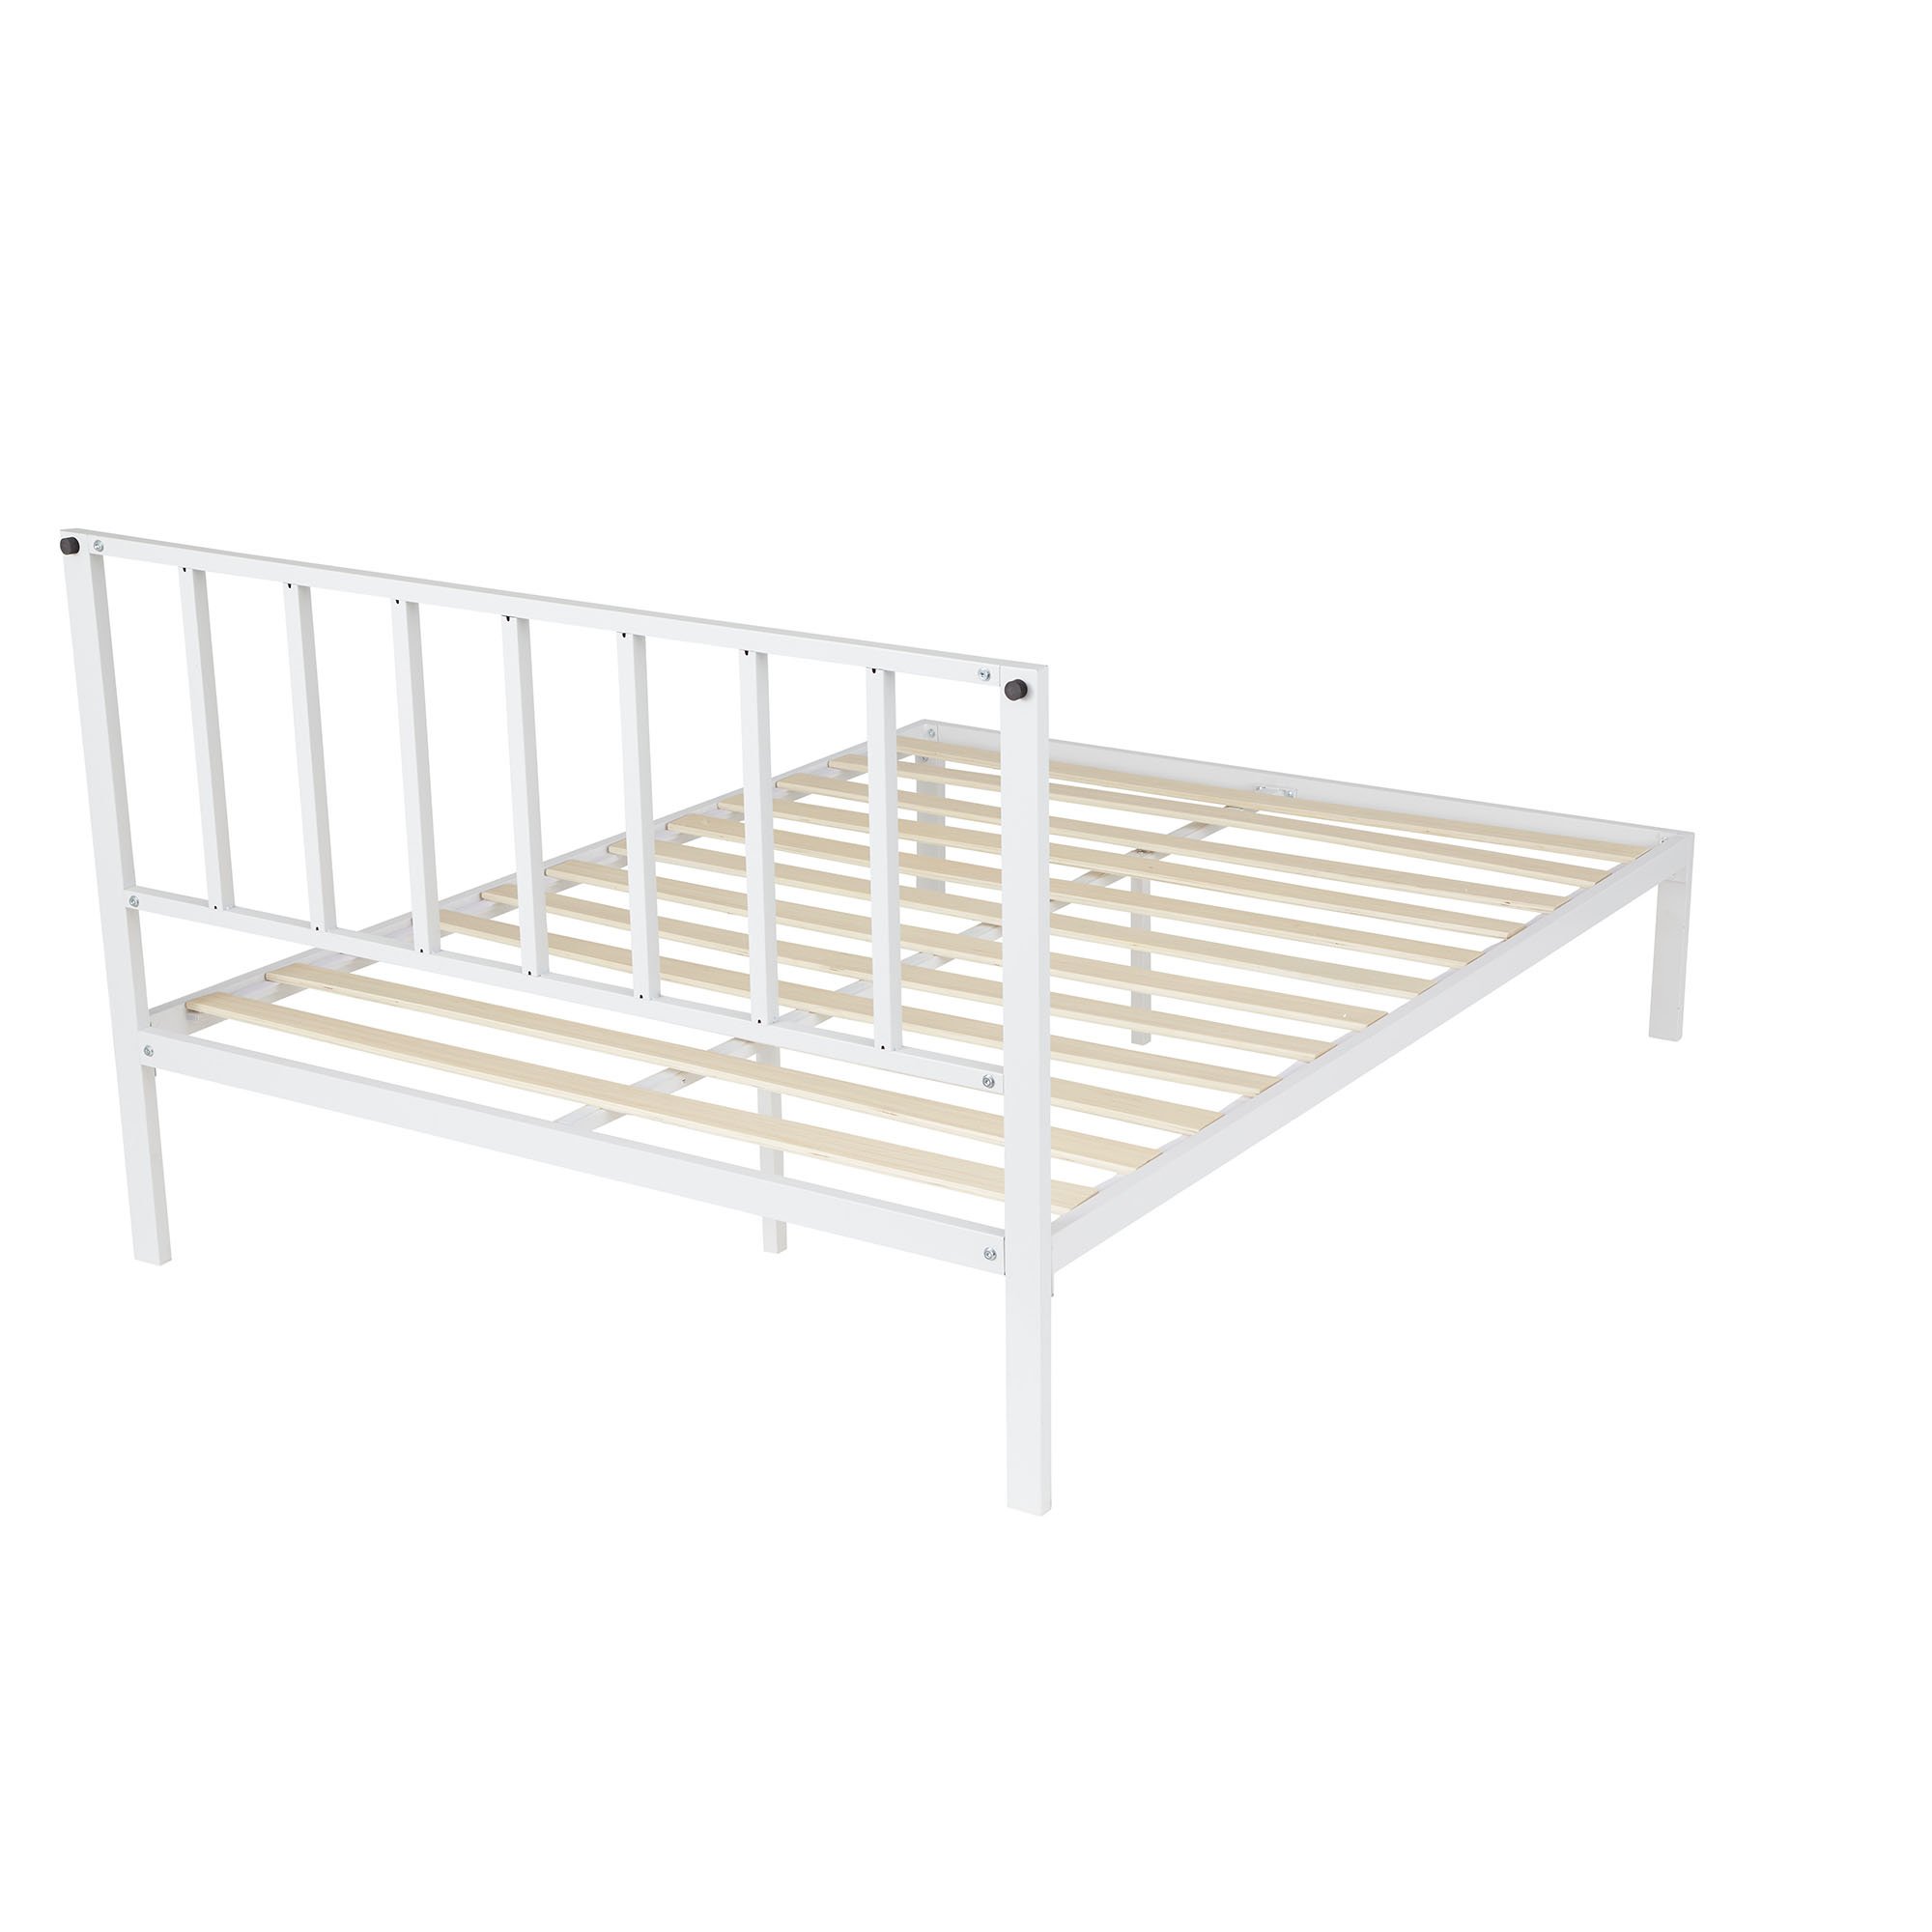 schuifelen kast negeren Rest Haven Bandon Metal Platform Bed with Headboard, Full, White -  Walmart.com